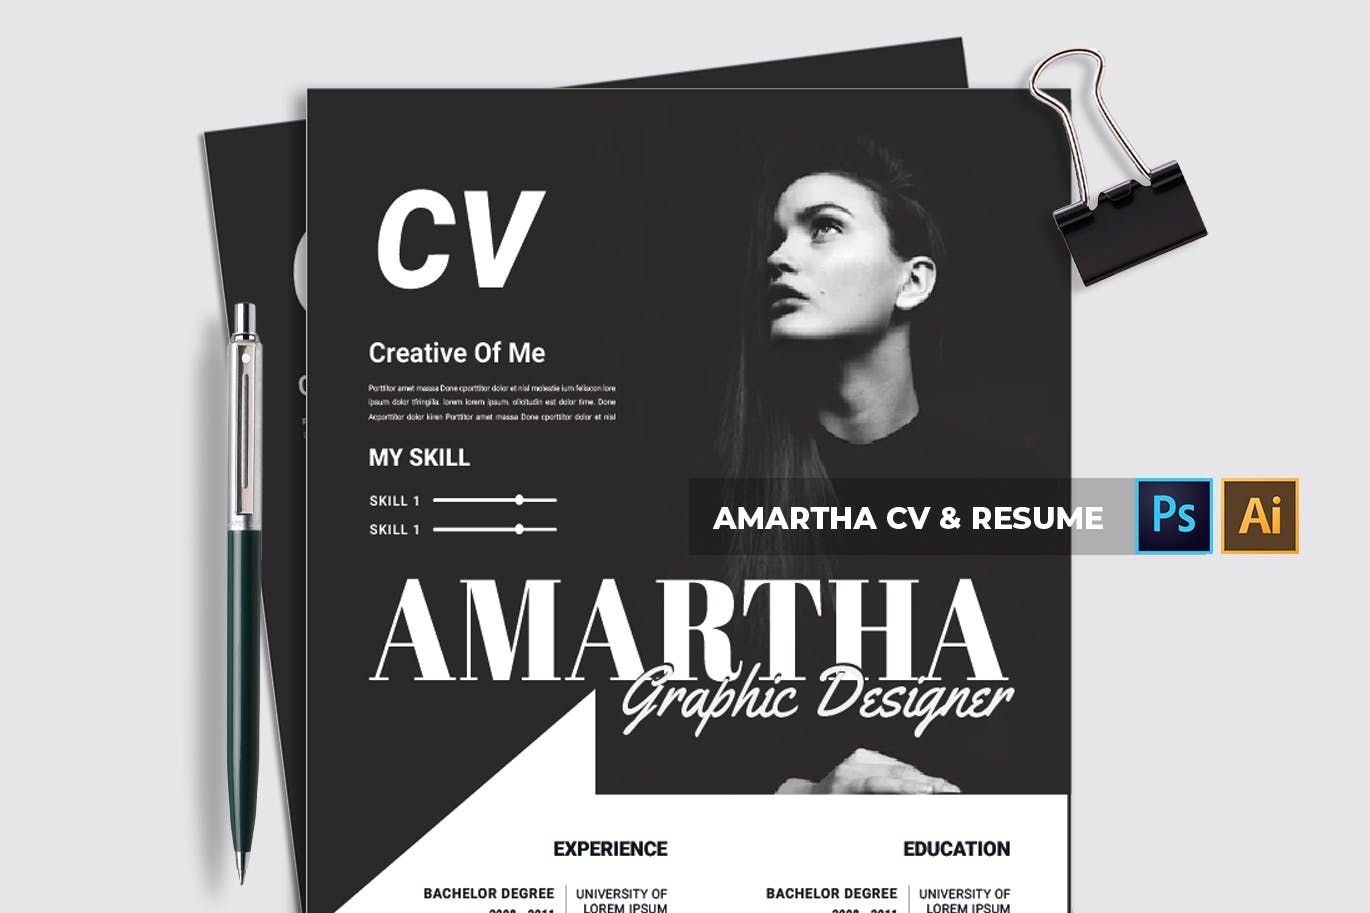 图形设计师/模特/时装设计师个人电子简历模板 Amartha | CV & Resume插图(2)